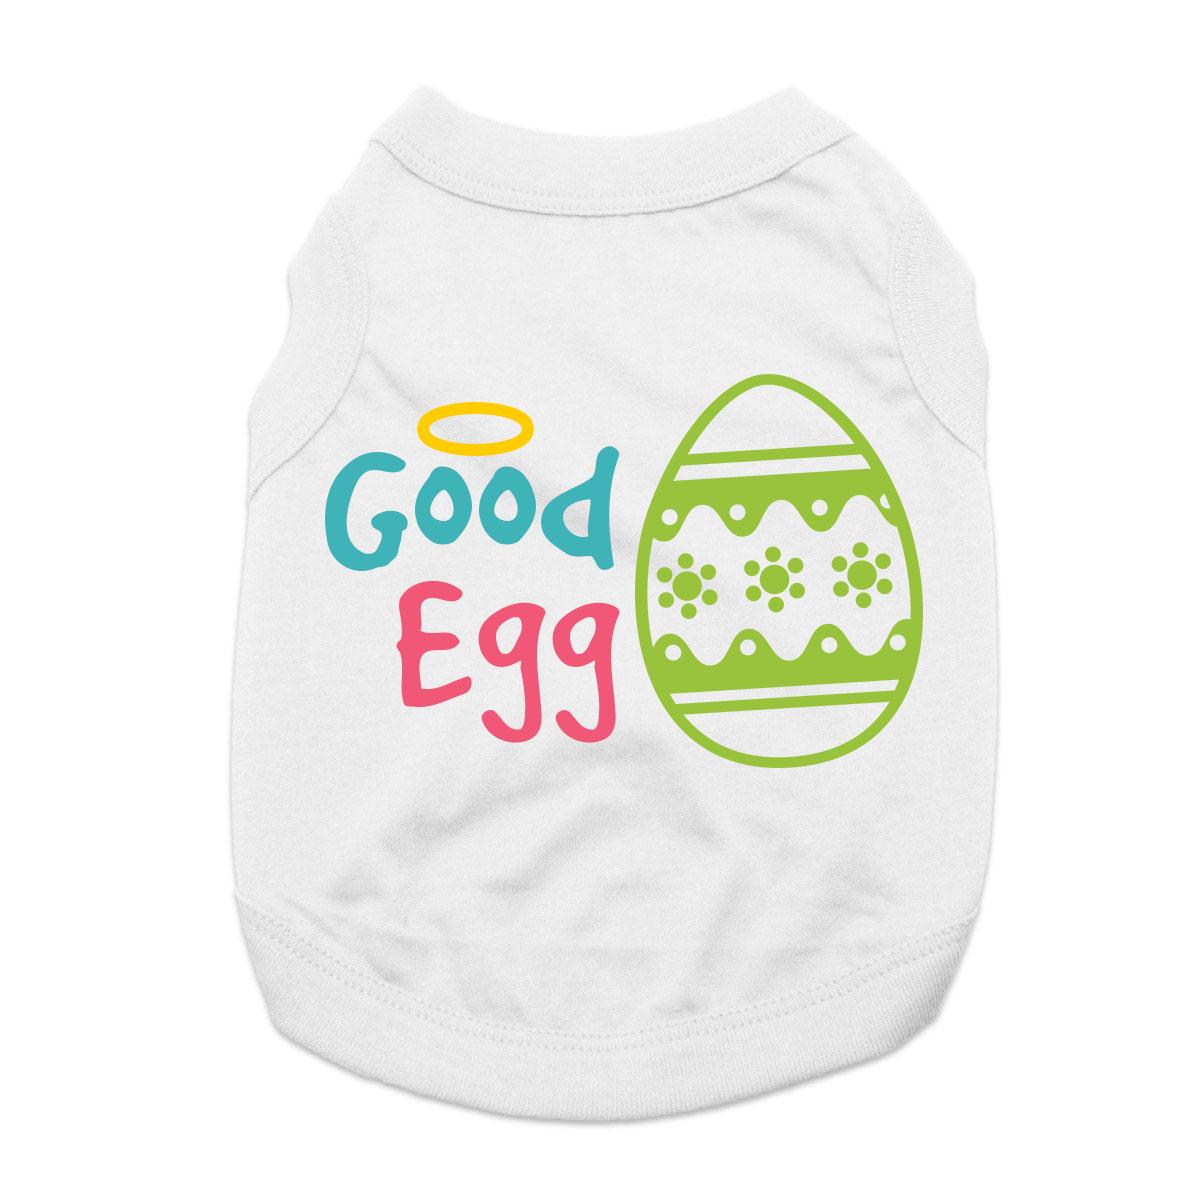 Good Egg Dog Shirt - White